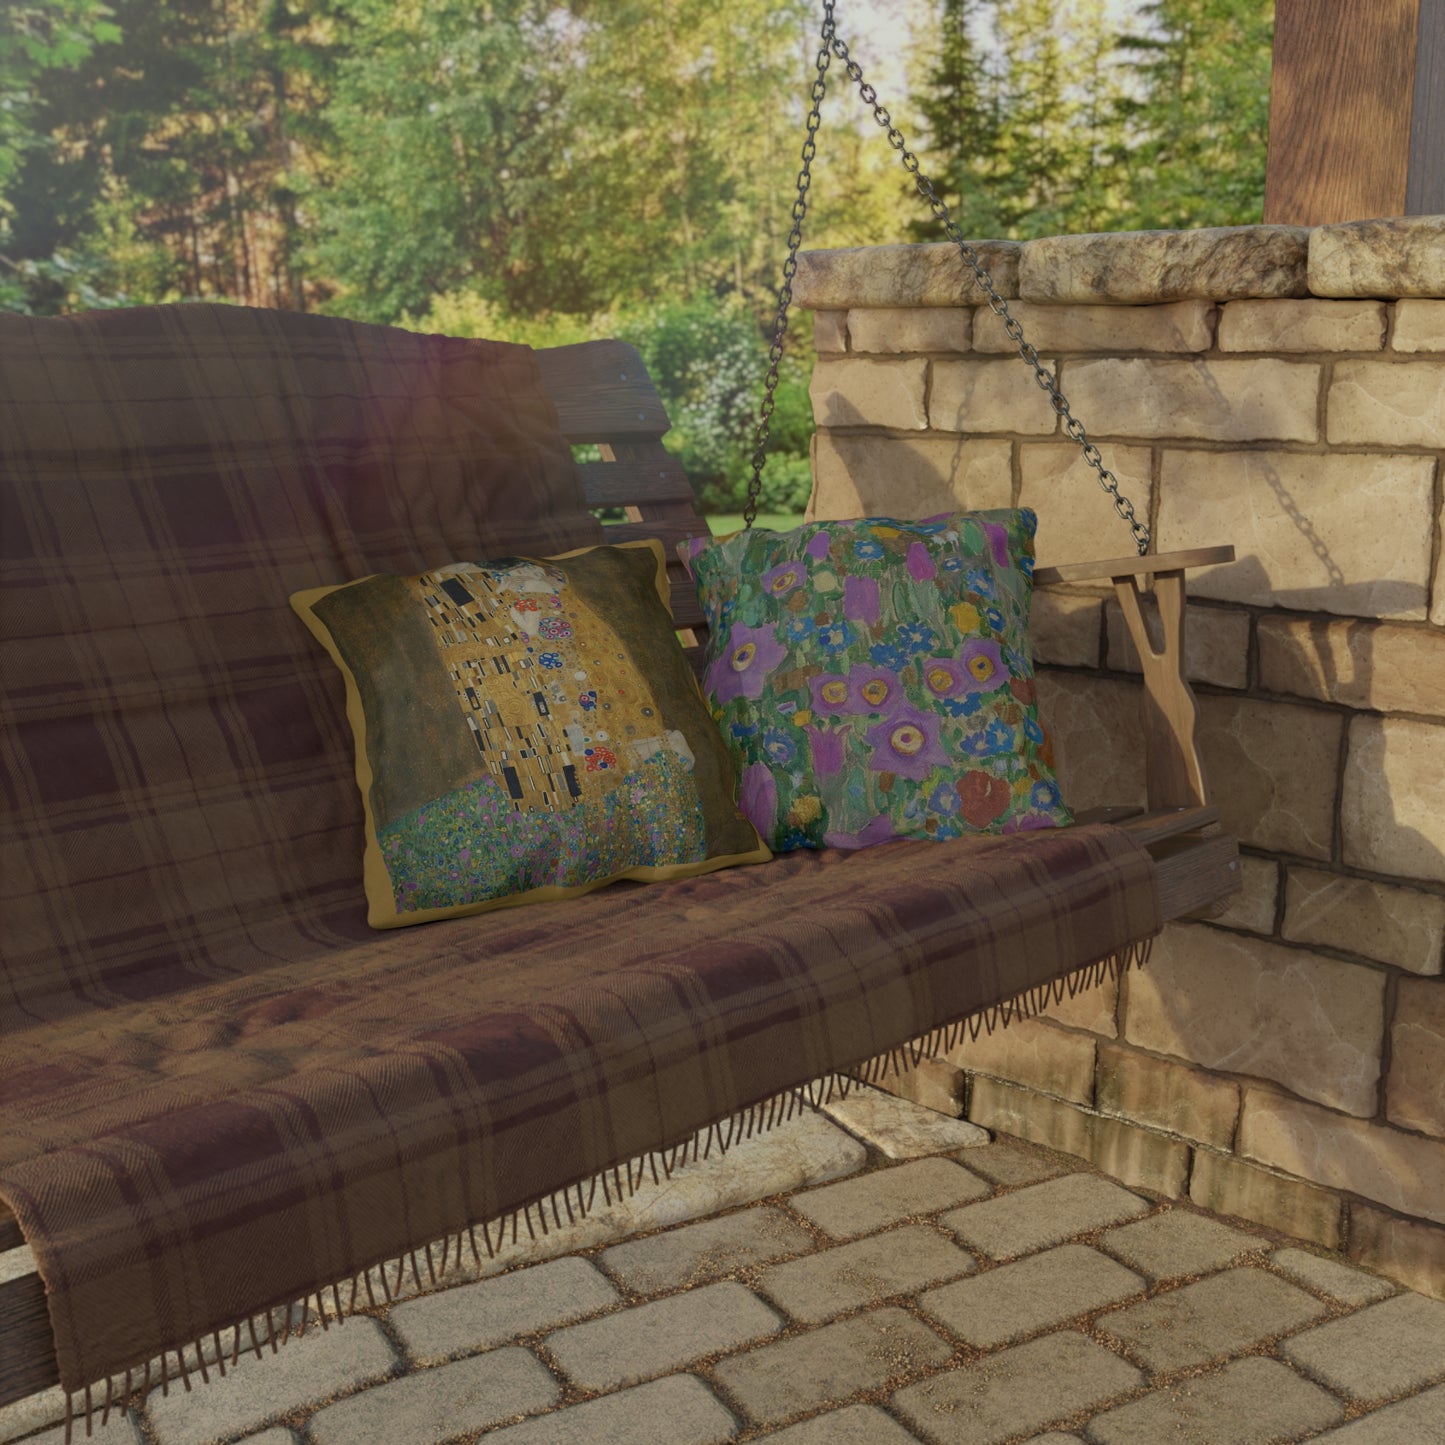 Klimt Kiss Outdoor Pillows